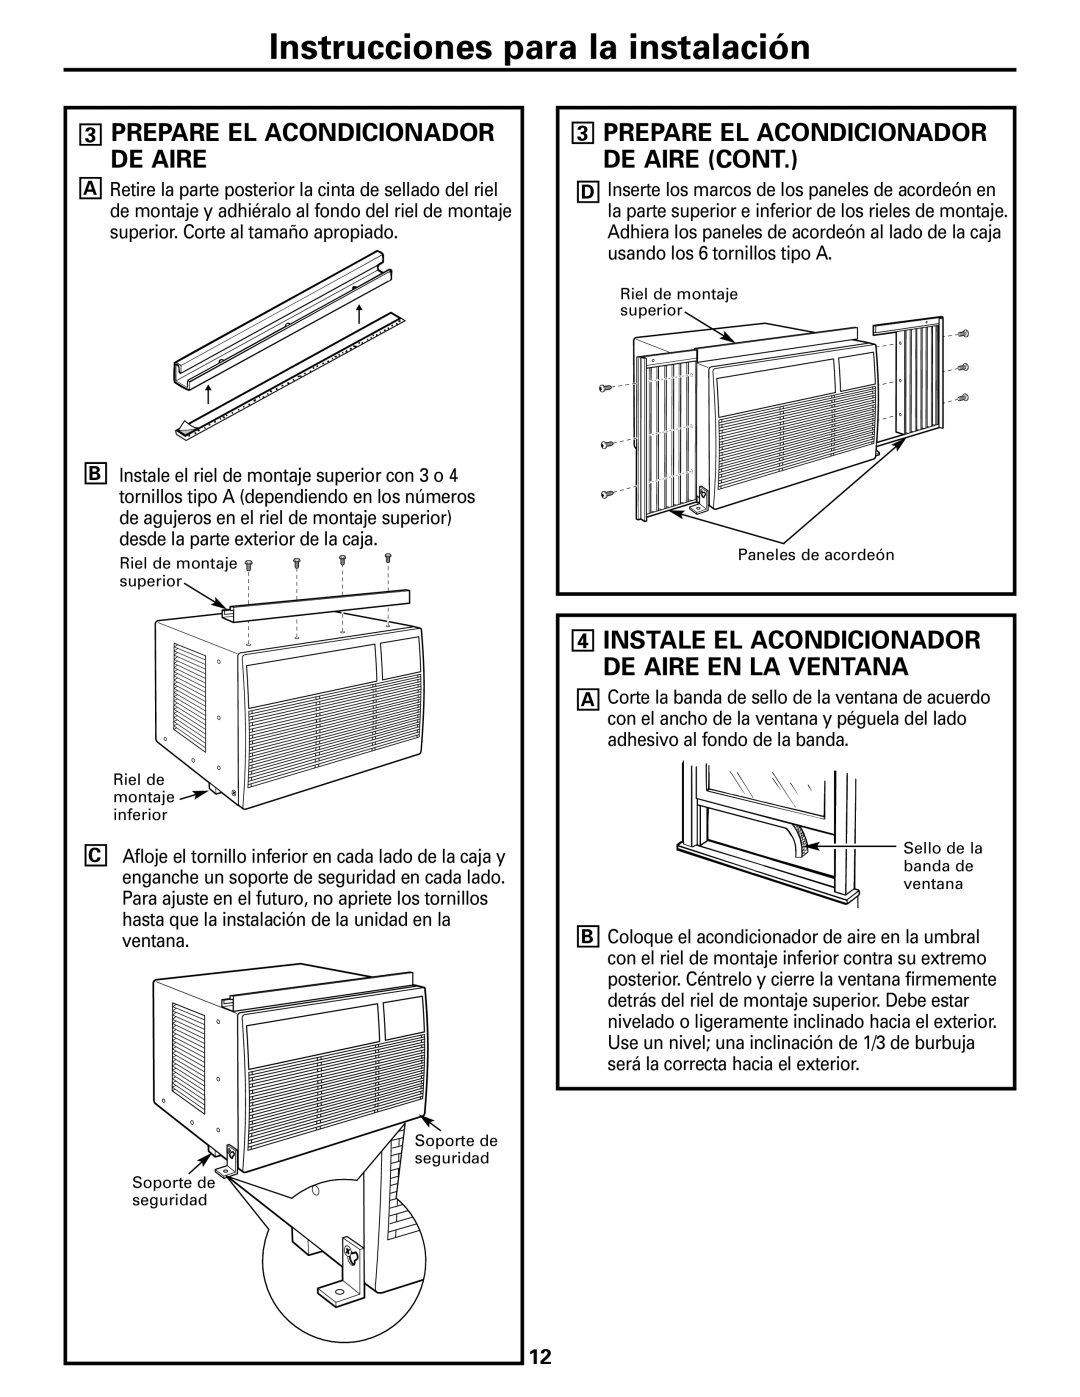 GE ASM06* installation instructions Instrucciones para la instalación, 3PREPARE EL ACONDICIONADOR DE AIRE CONT 